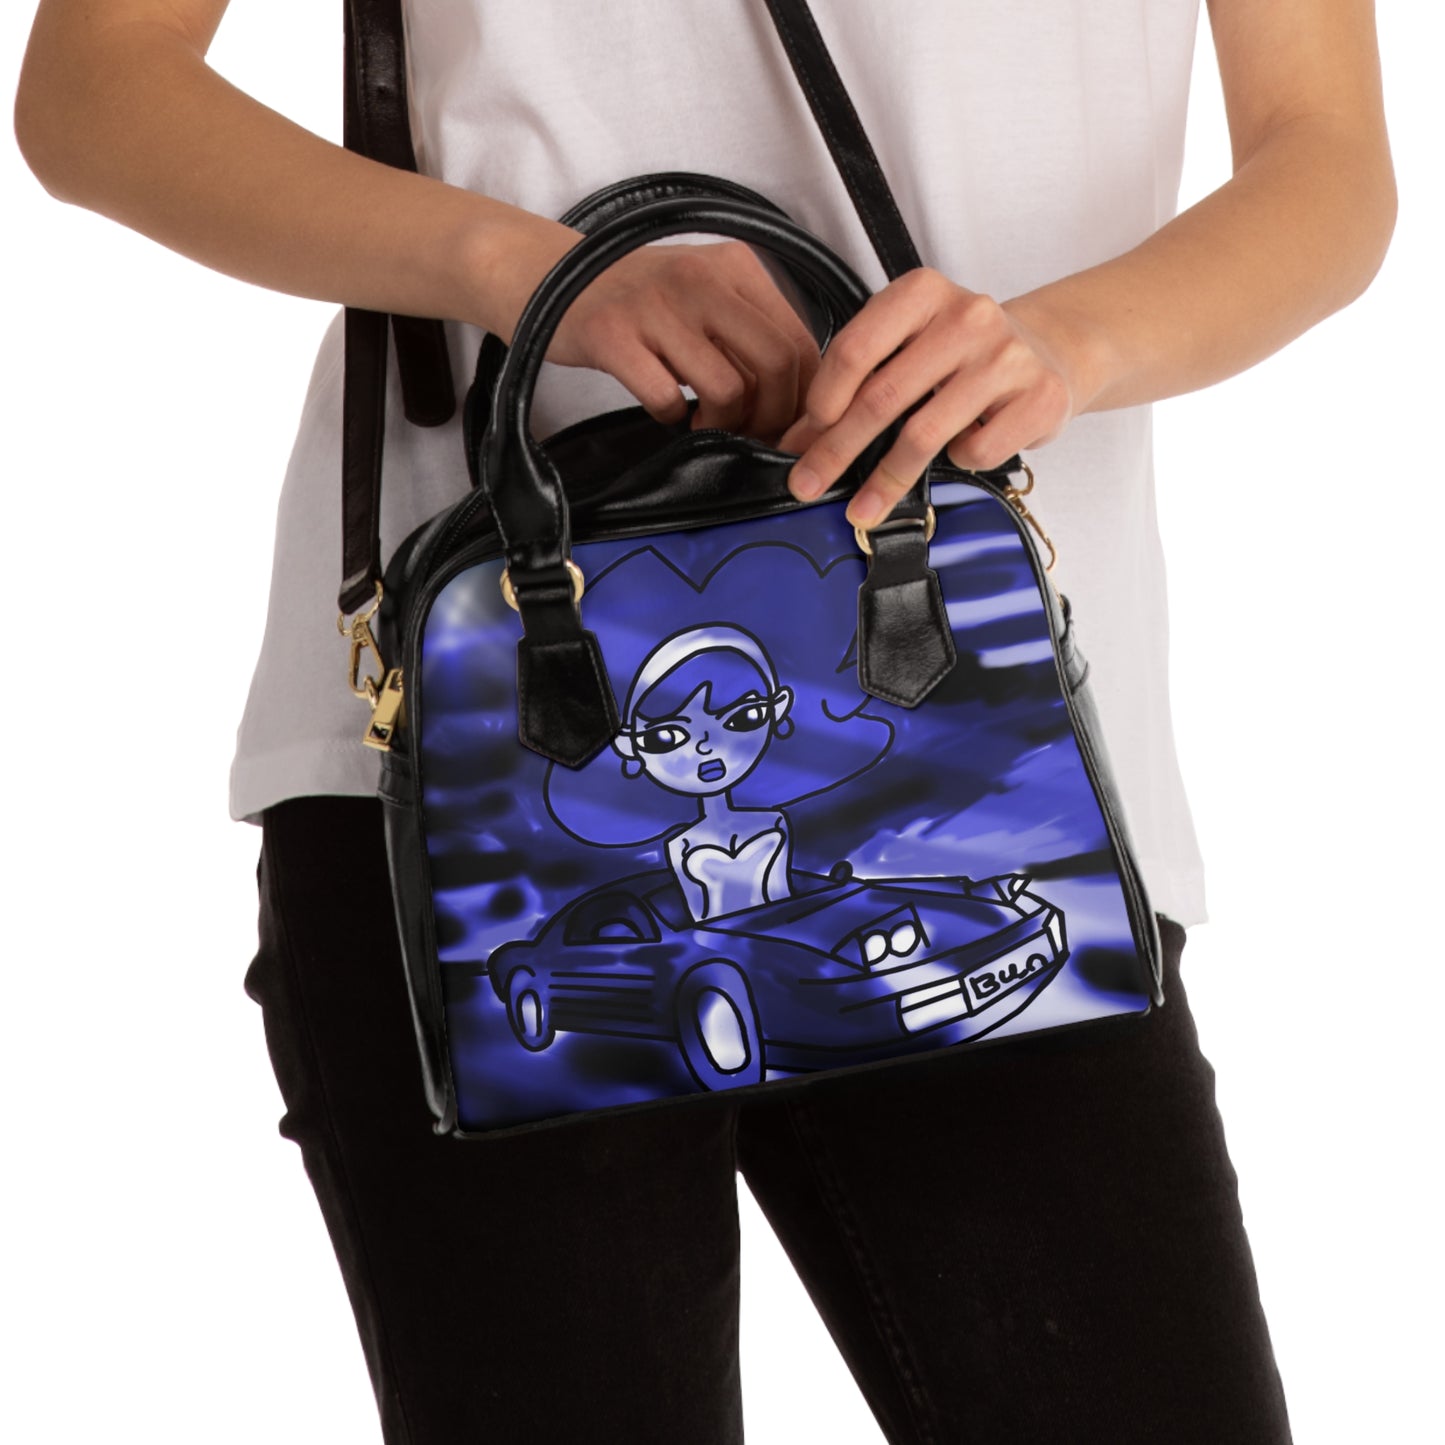 Retro hotrod girl art shoulder handbag